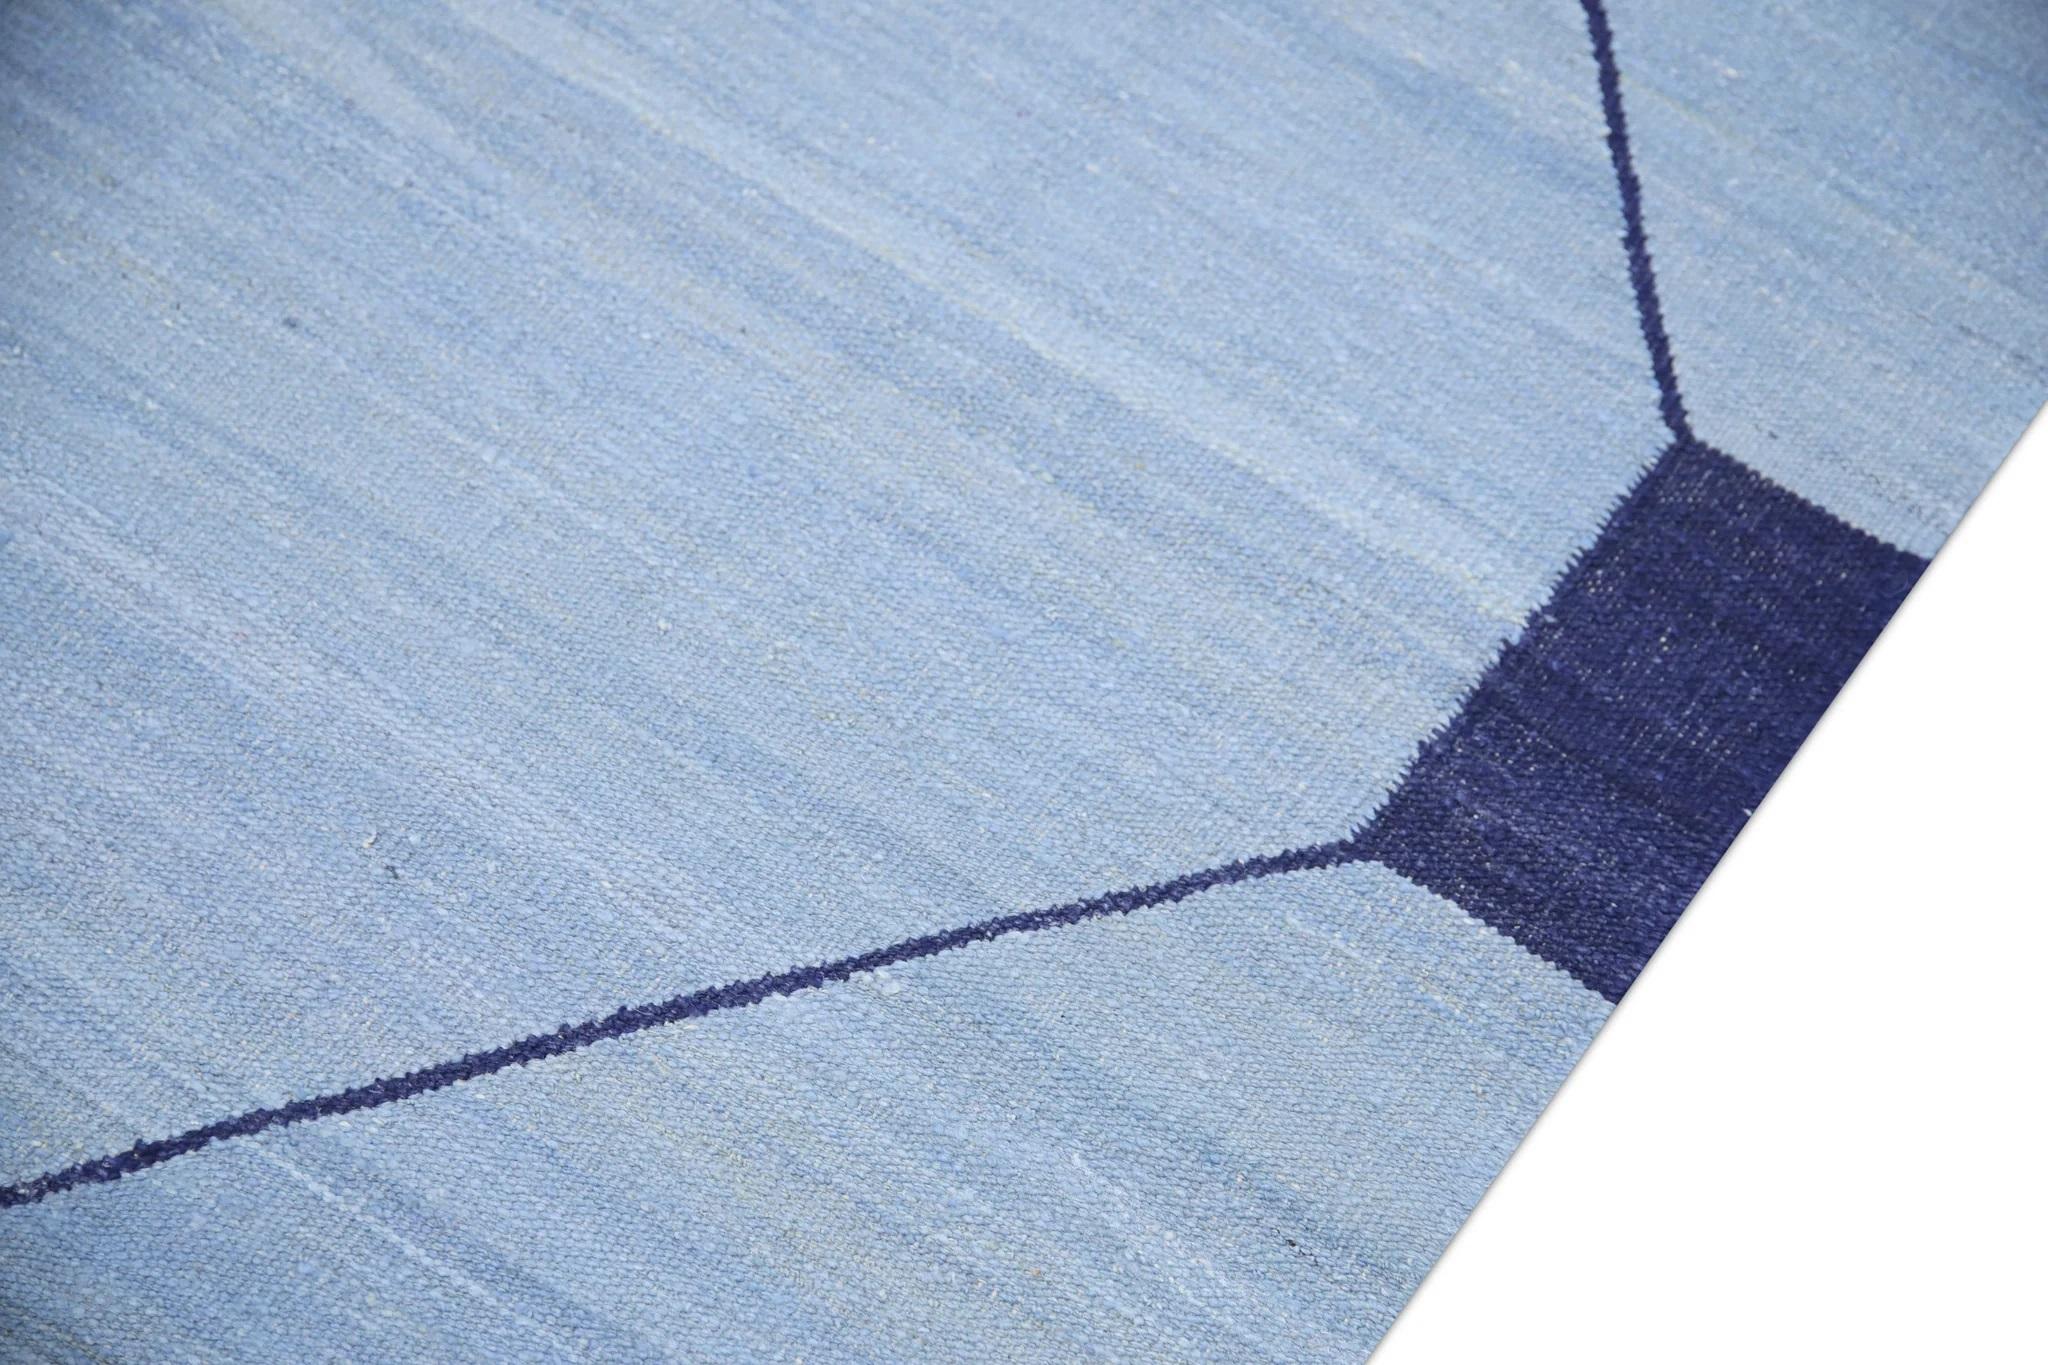 Vegetable Dyed Blue & Navy Geometric Design Flatweave Handmade Wool Rug 10' X 14'7